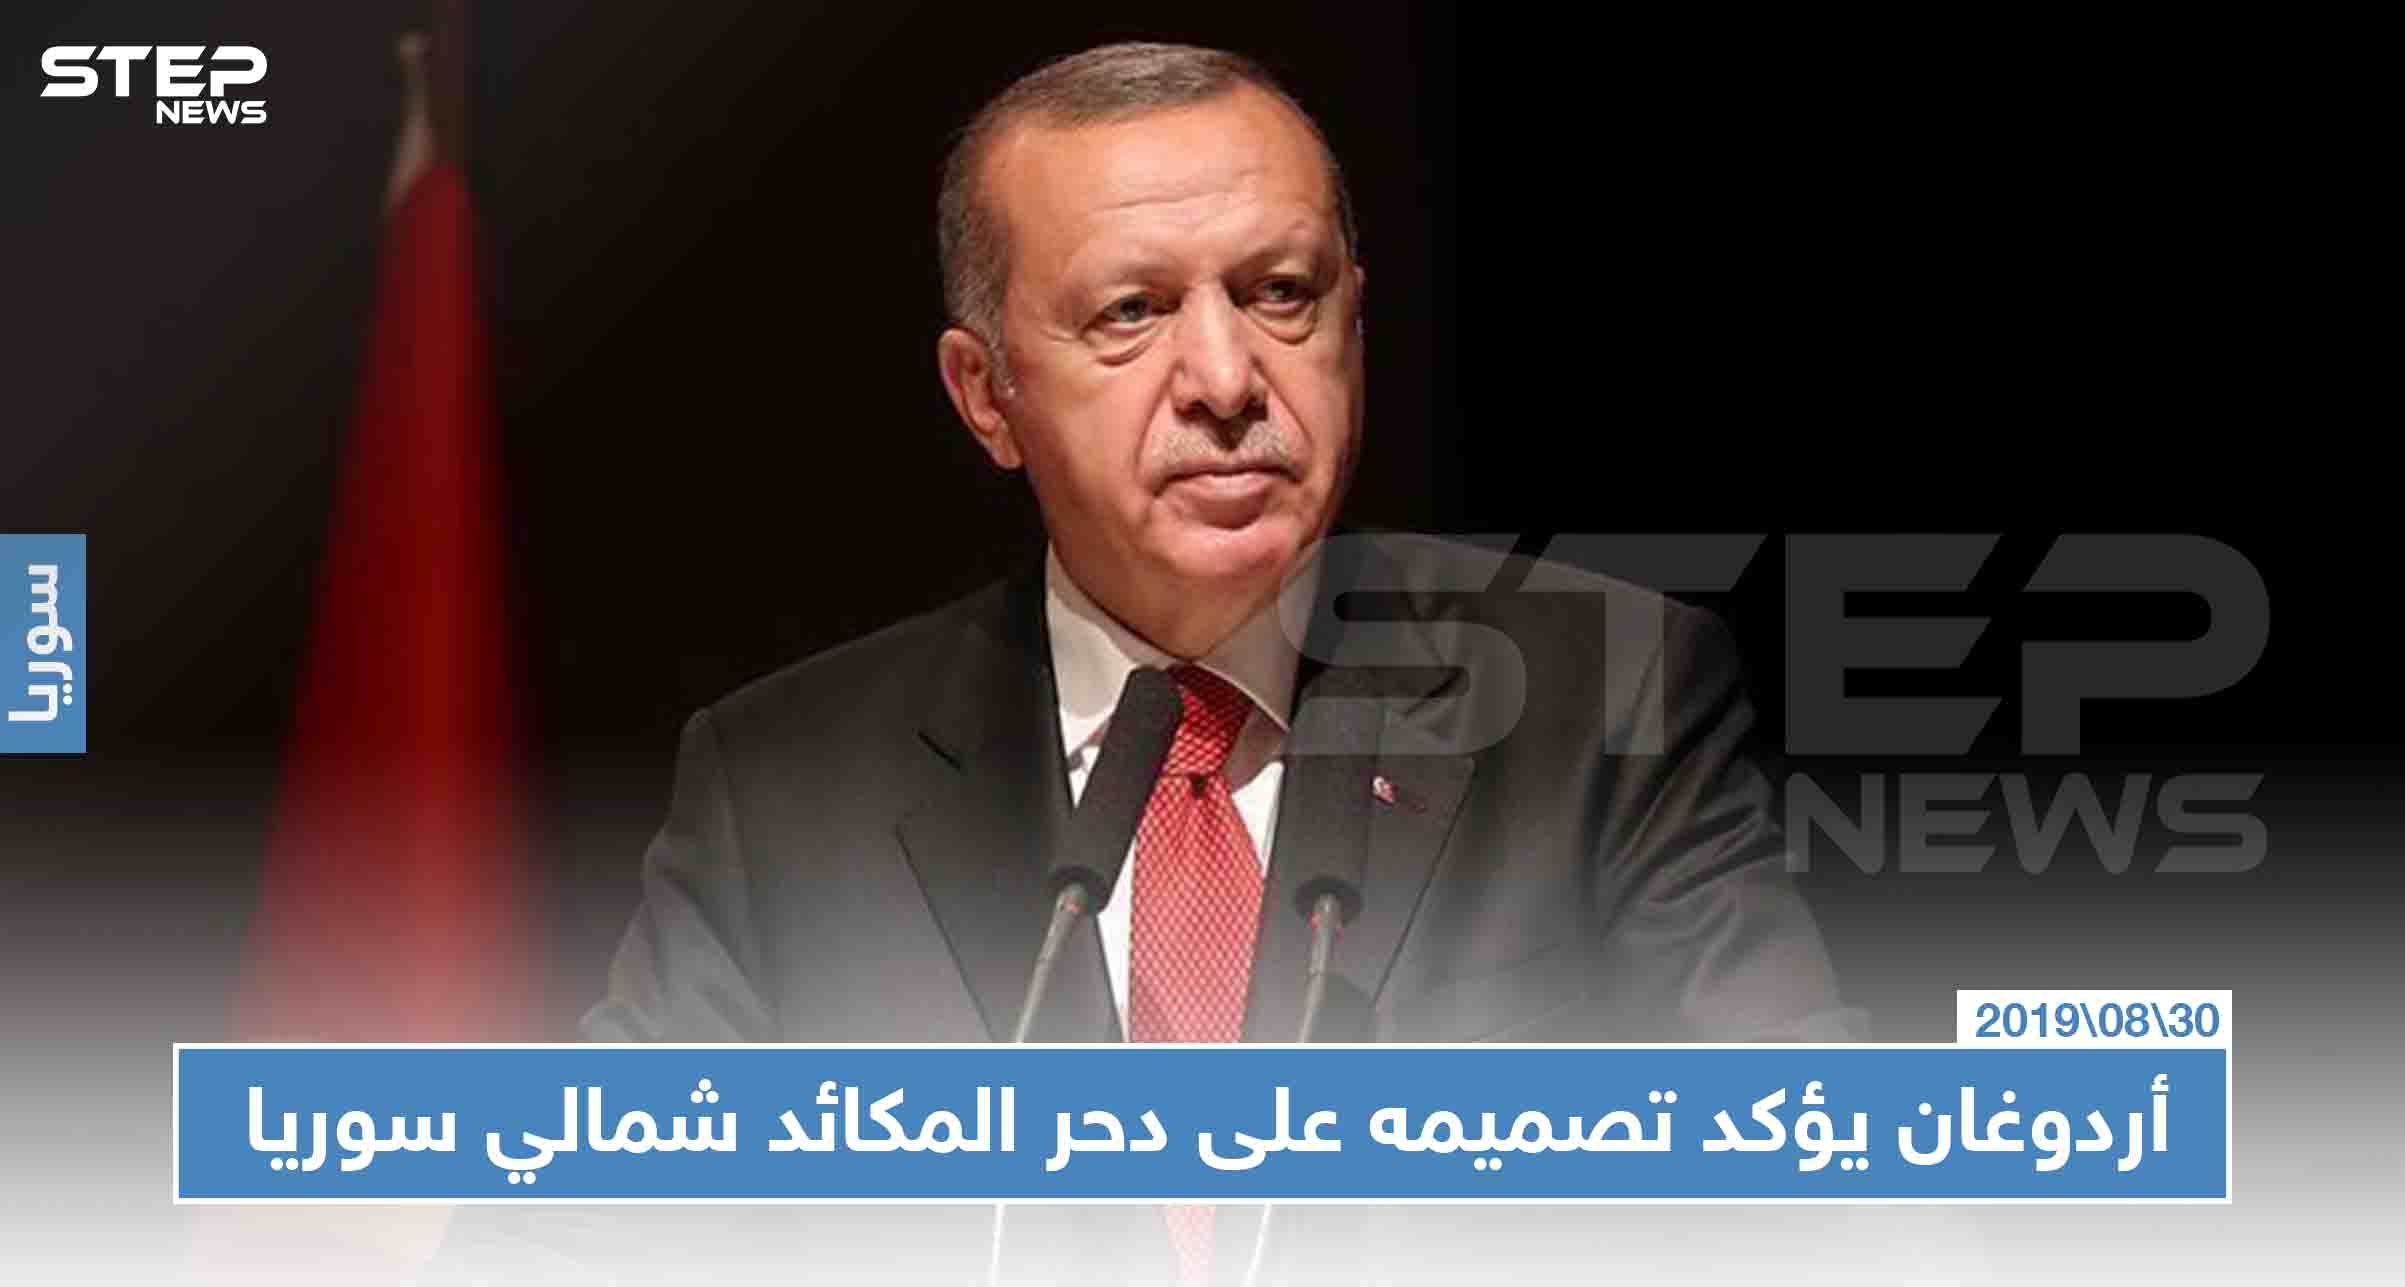 في مناسبة تركية خاصة، أردوغان يؤكد تصميمه على "دحر المكائد" شمالي سوريا